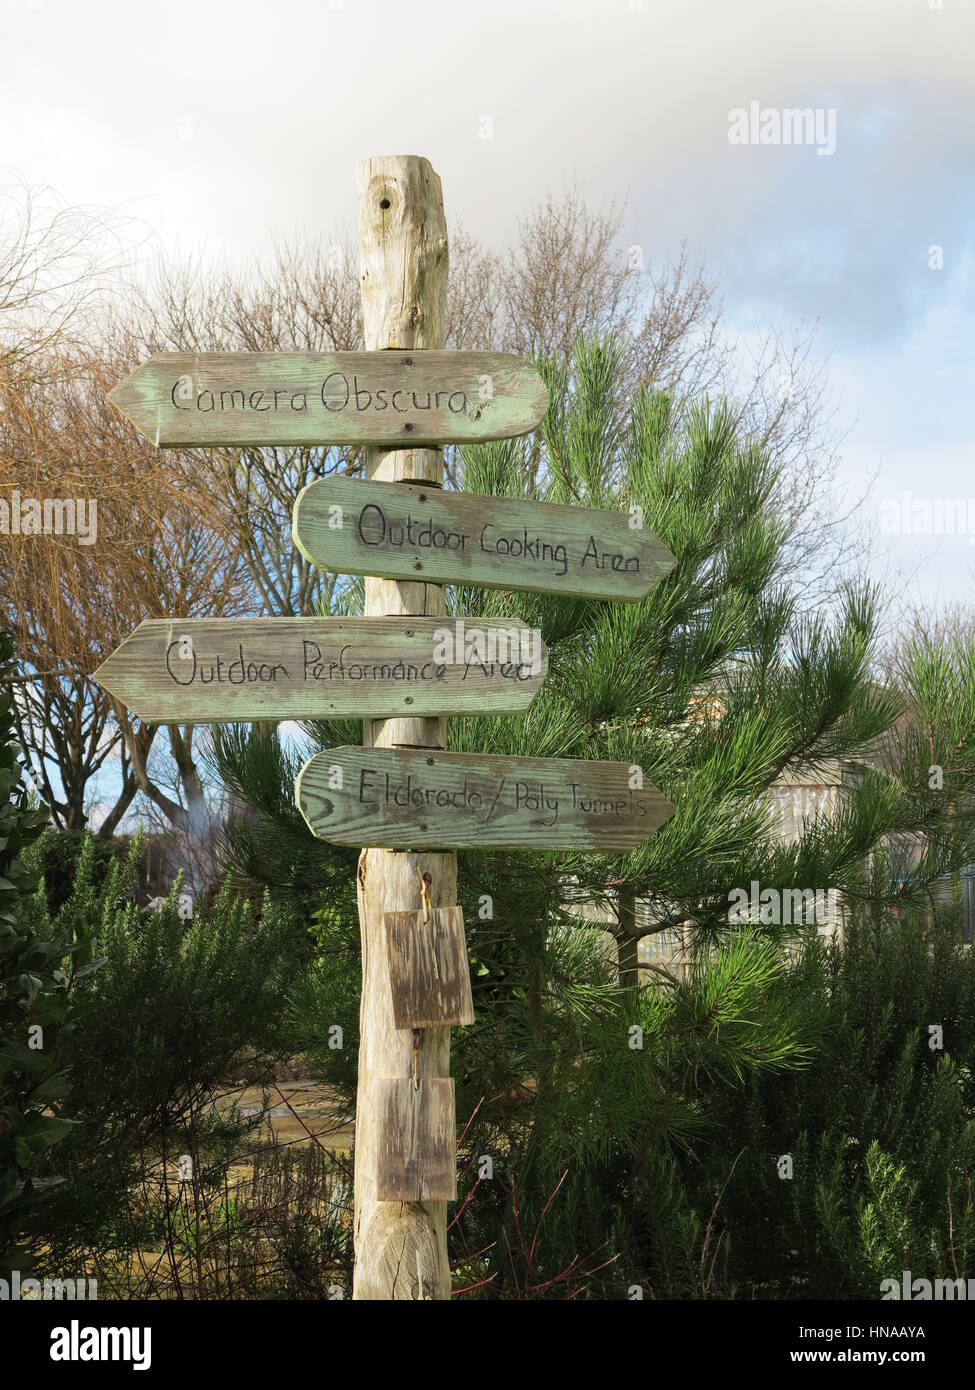 Wooden signposts in school garden Stock Photo